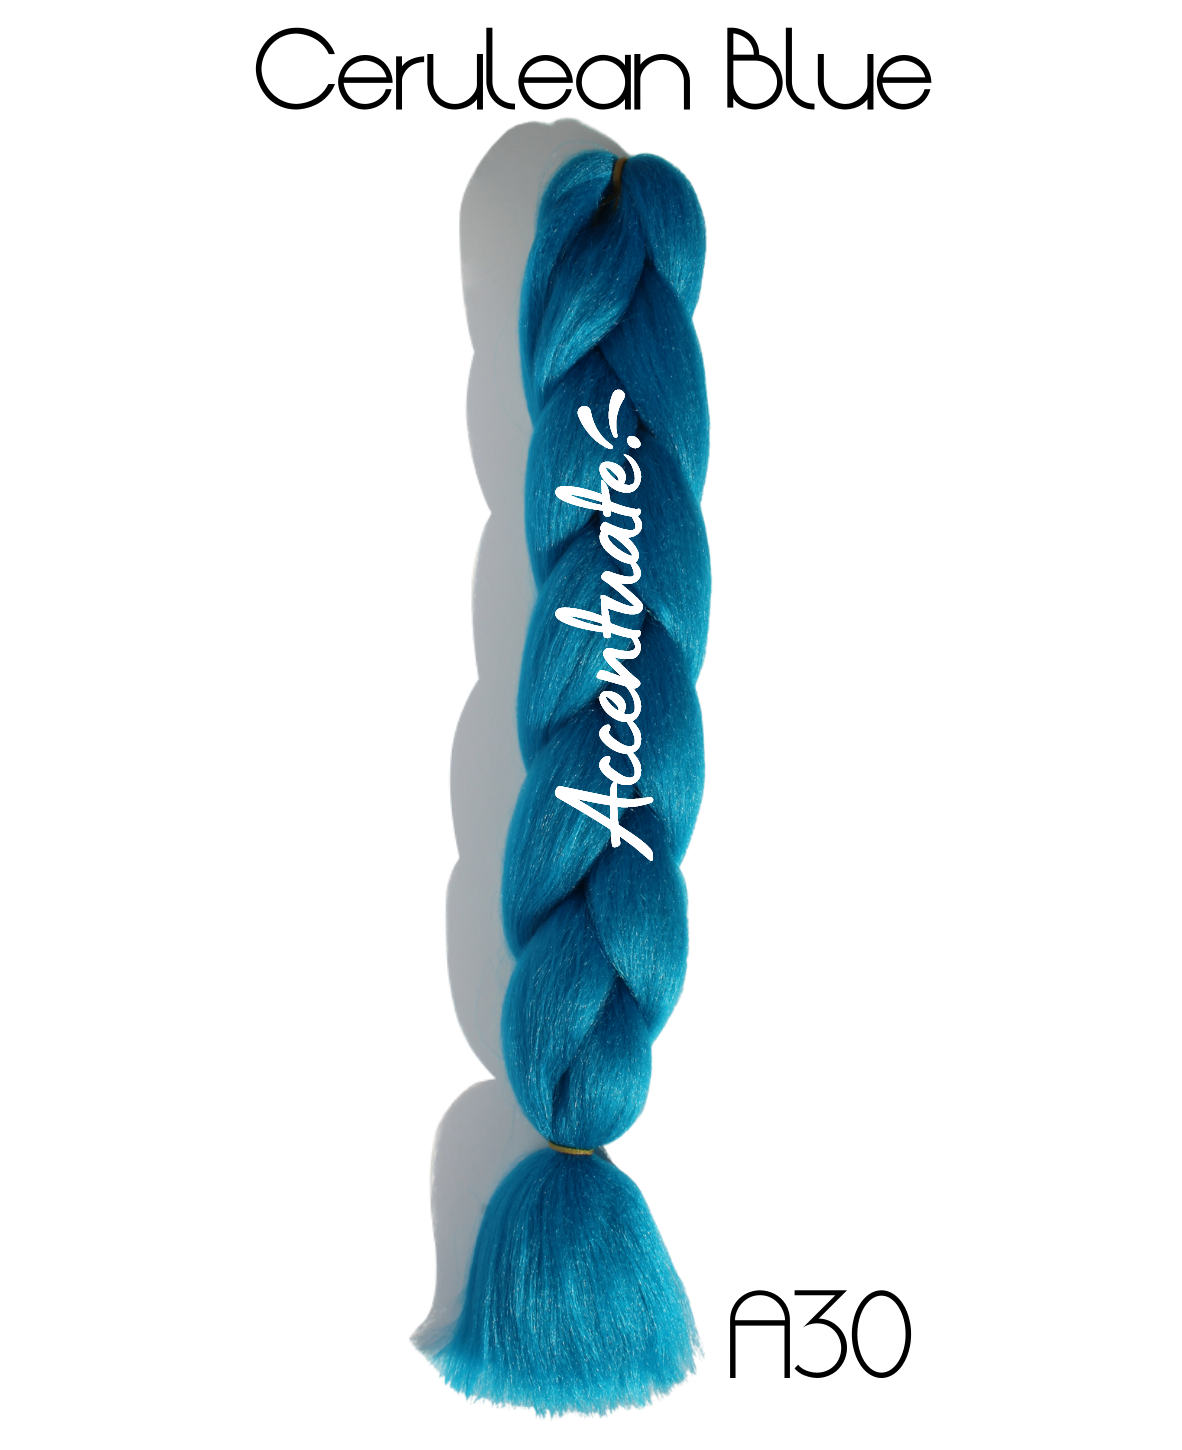 24" (A30) Cerulean Blue Plain Jumbo Braid Hair Extension